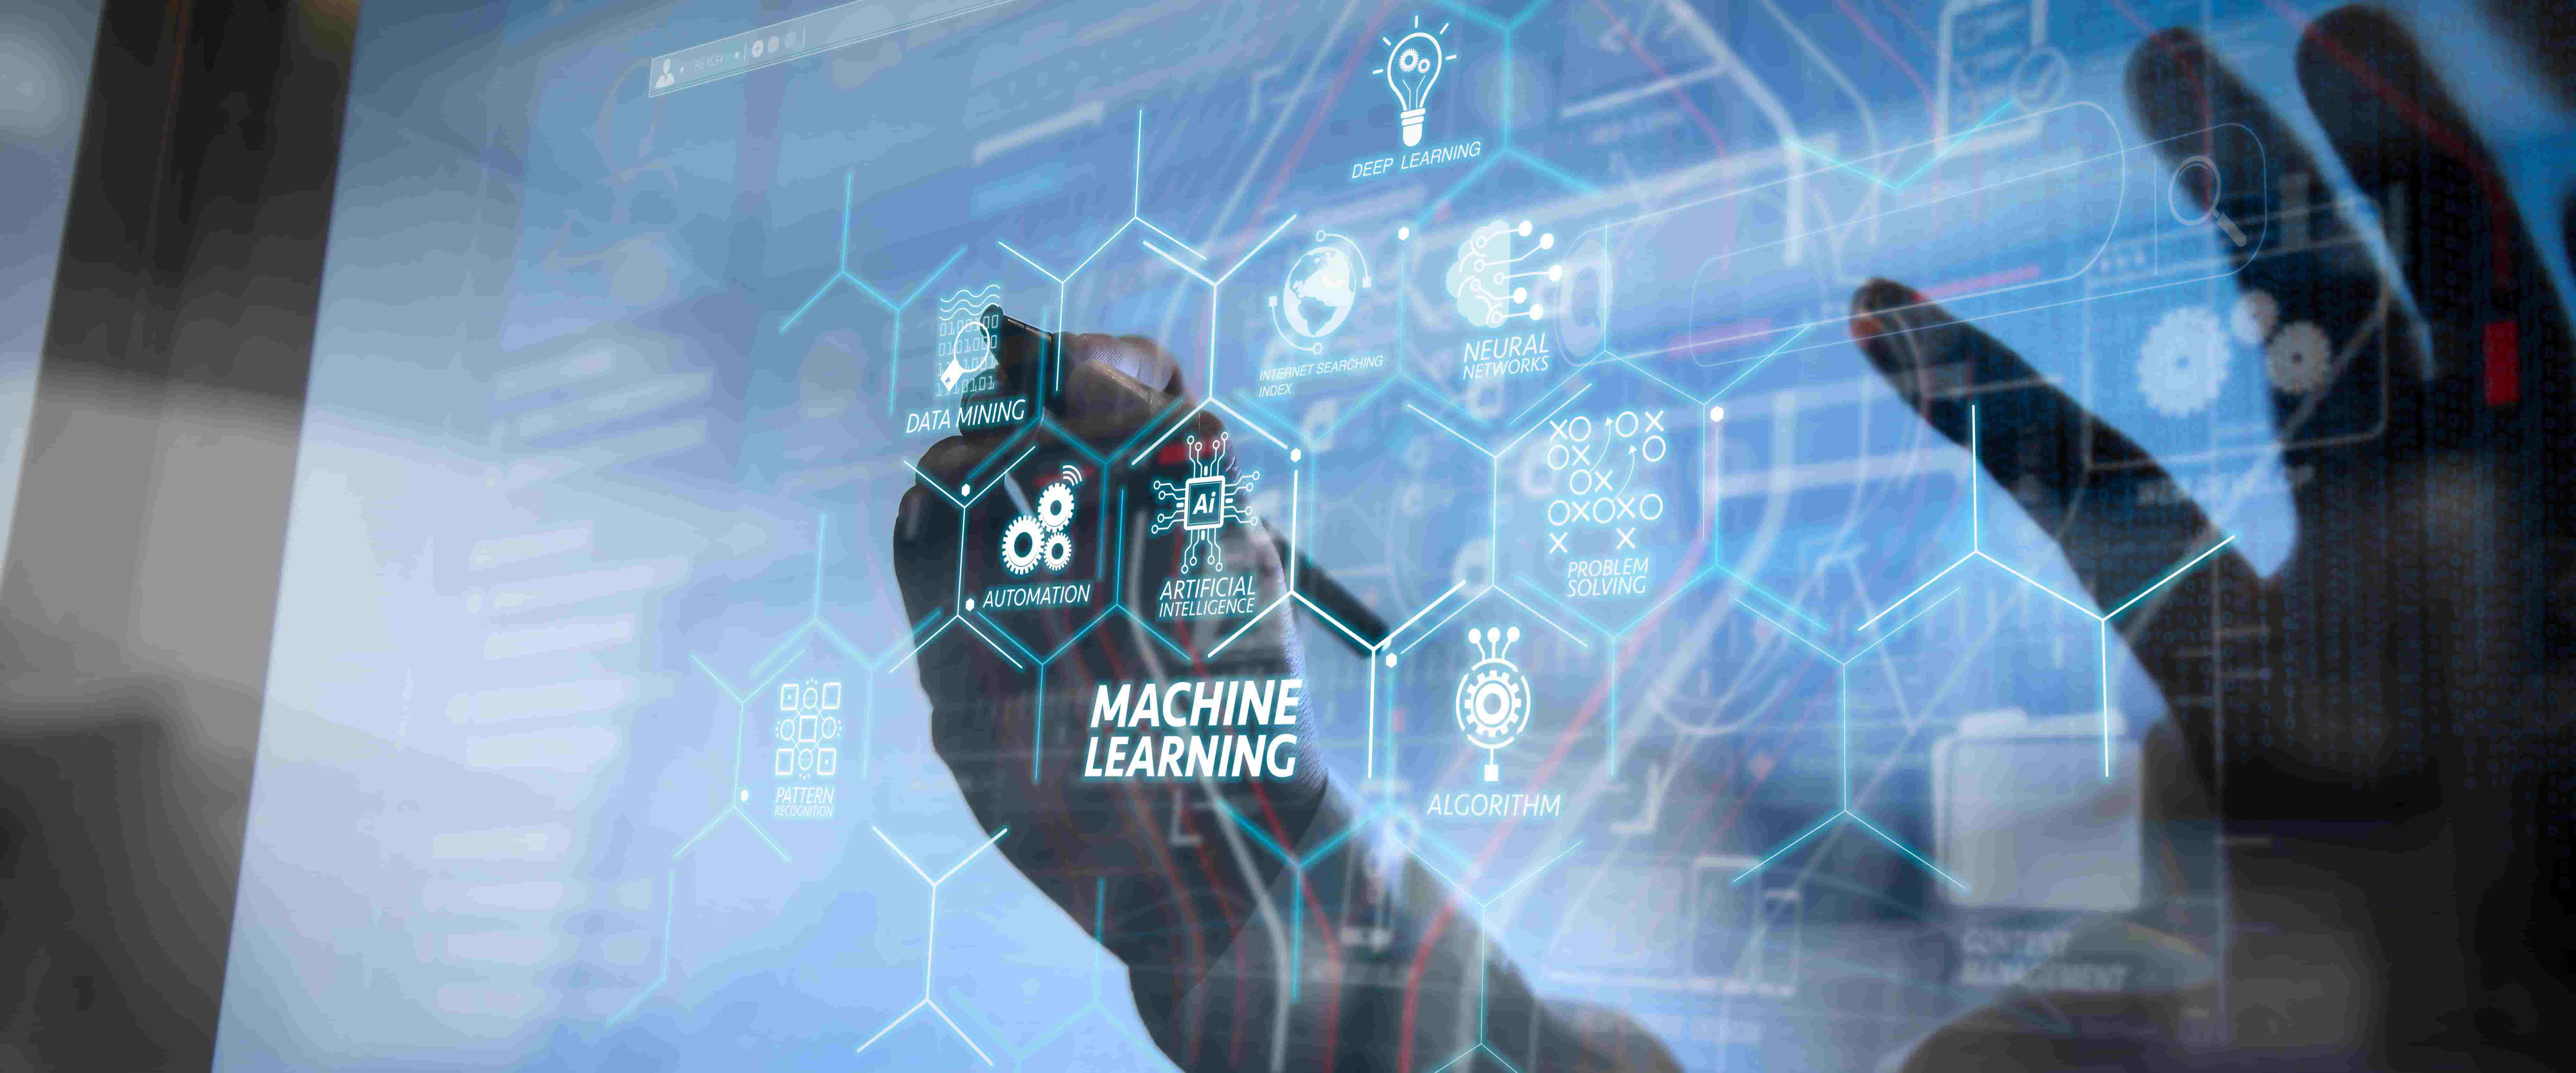 图片展示了一只手在触摸带有多个科技图标和英文标签的透明屏幕，中心写着“机器学习”，体现了现代技术和人工智能概念。